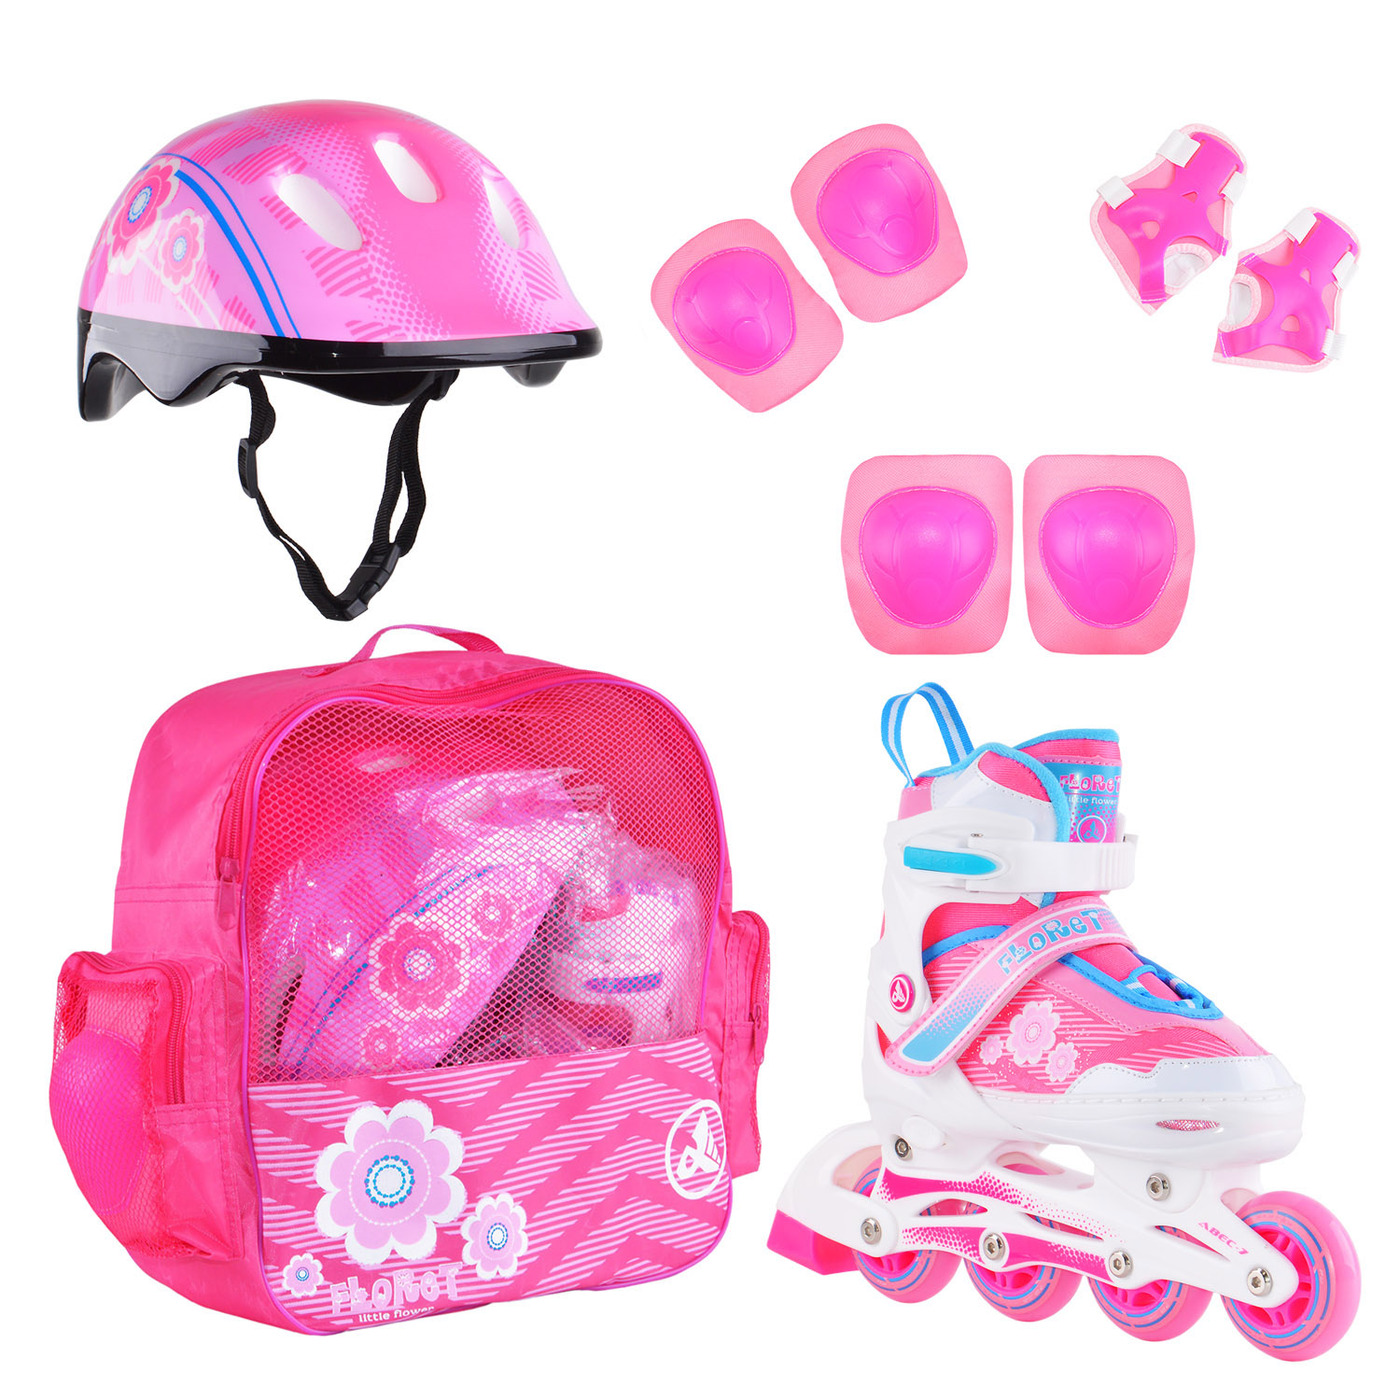 Раздвижные роликовые коньки Alpha Caprice FLORET Wh/Pink/Bl, шлем, защита, сумка M: 35-38 раздвижные коньки rgx winter pink